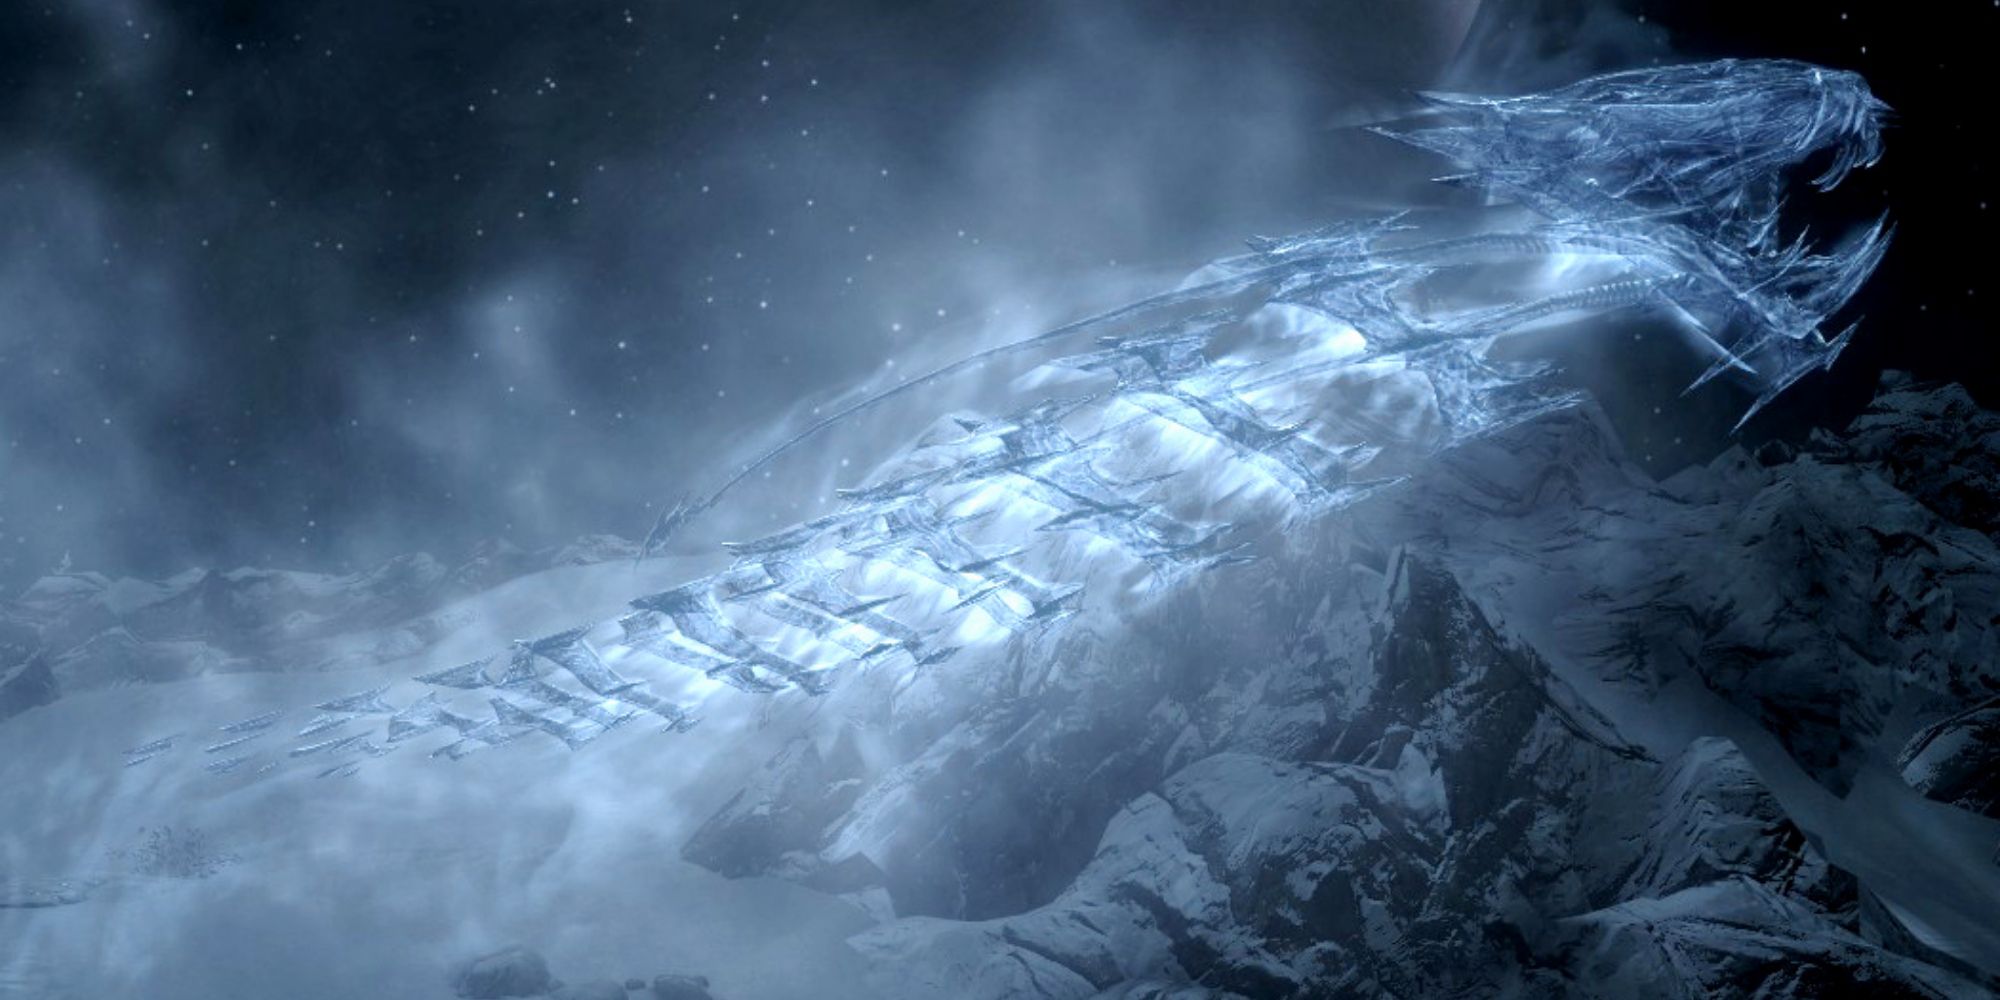 Skyrim ice wraith